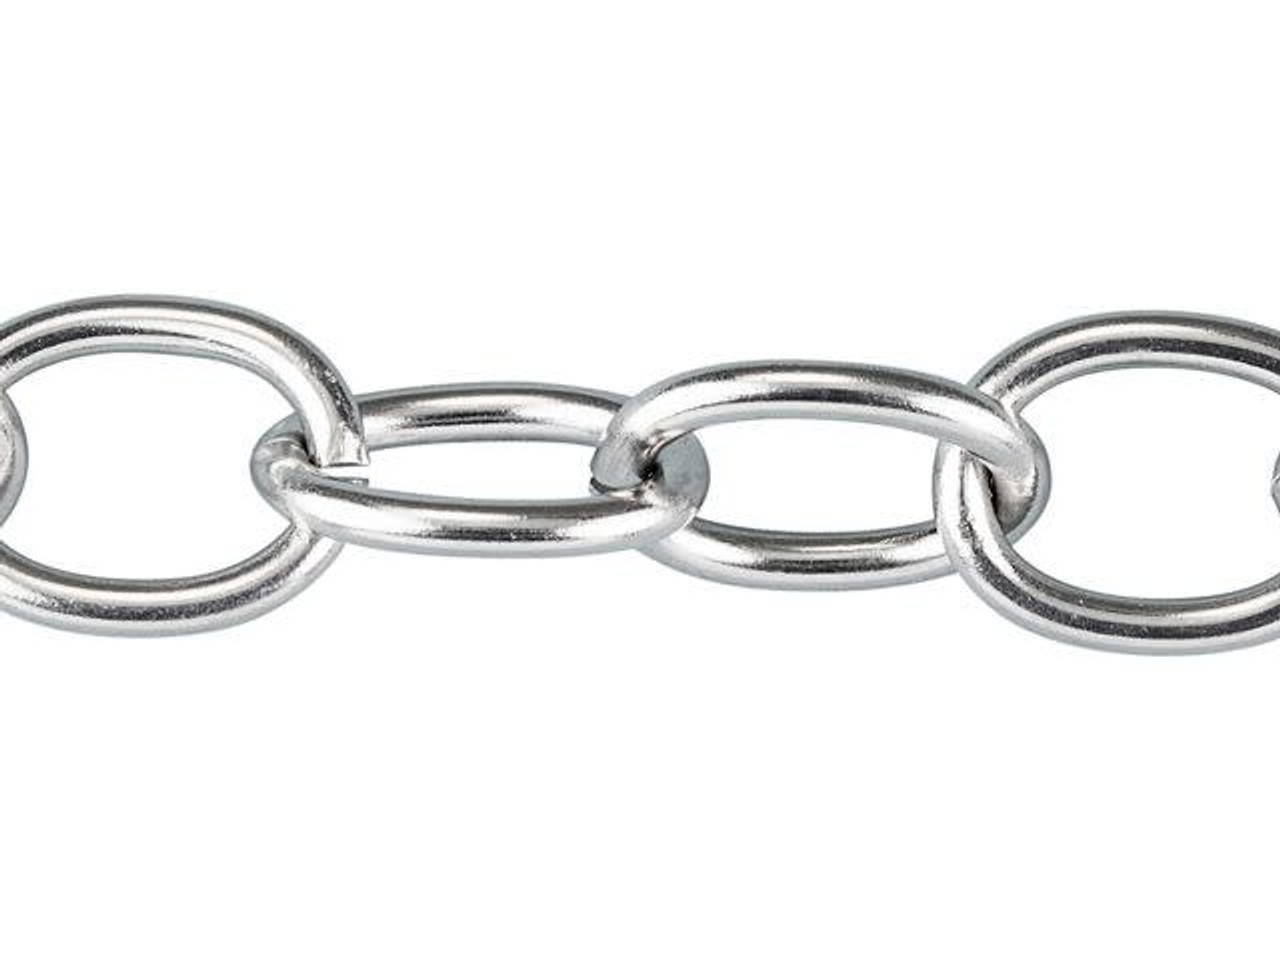 Stainless steel bracelet for men, rectangular, or venetian chain